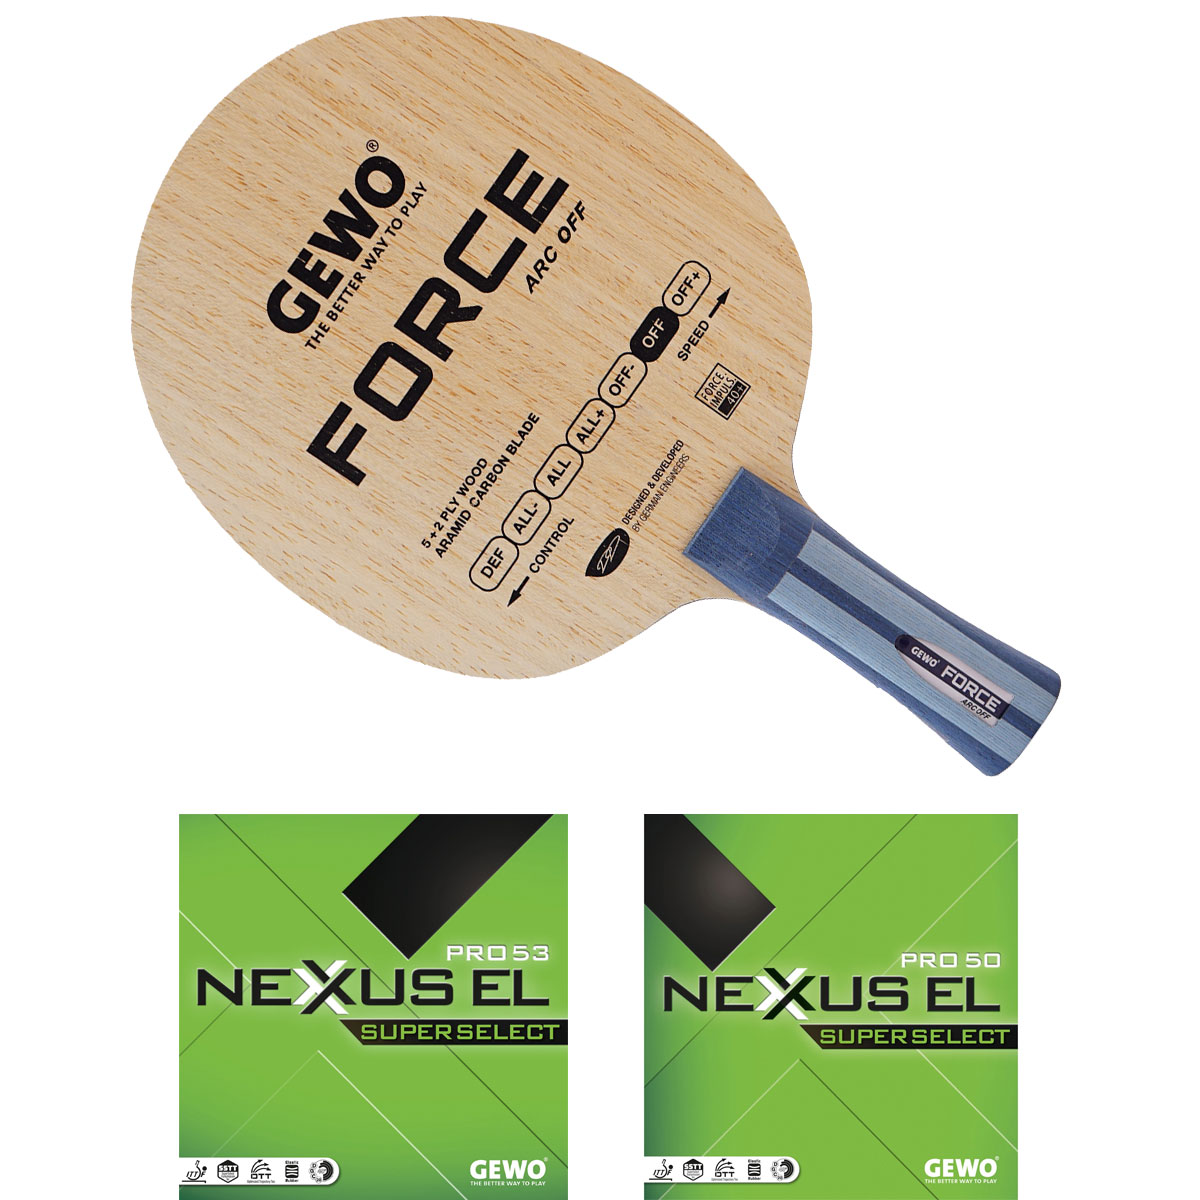 GEWO Bat: Blade Force ARC with Nexxus EL Pro53 SupSel +  Nexxus EL Pro50 SupSel